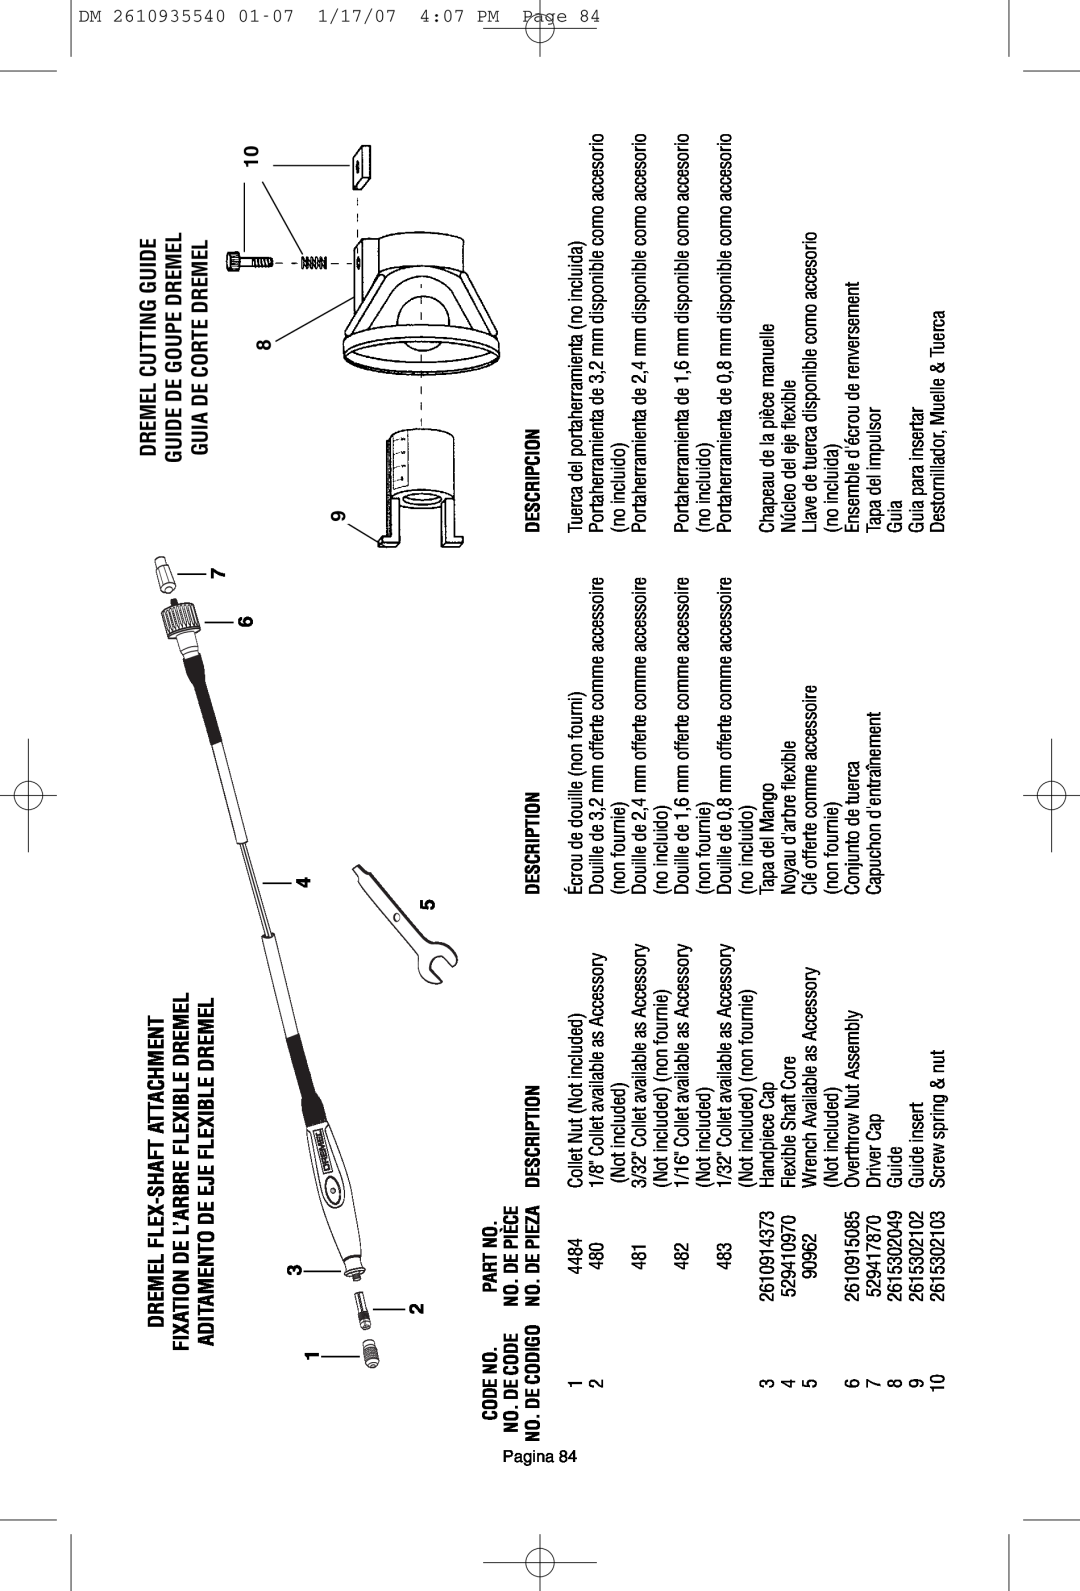 Dremel F013039519 Dremel Flex-Shaft Attachment, Dremel Cutting Guide Guide De Goupe Dremel Guia De Corte Dremel 